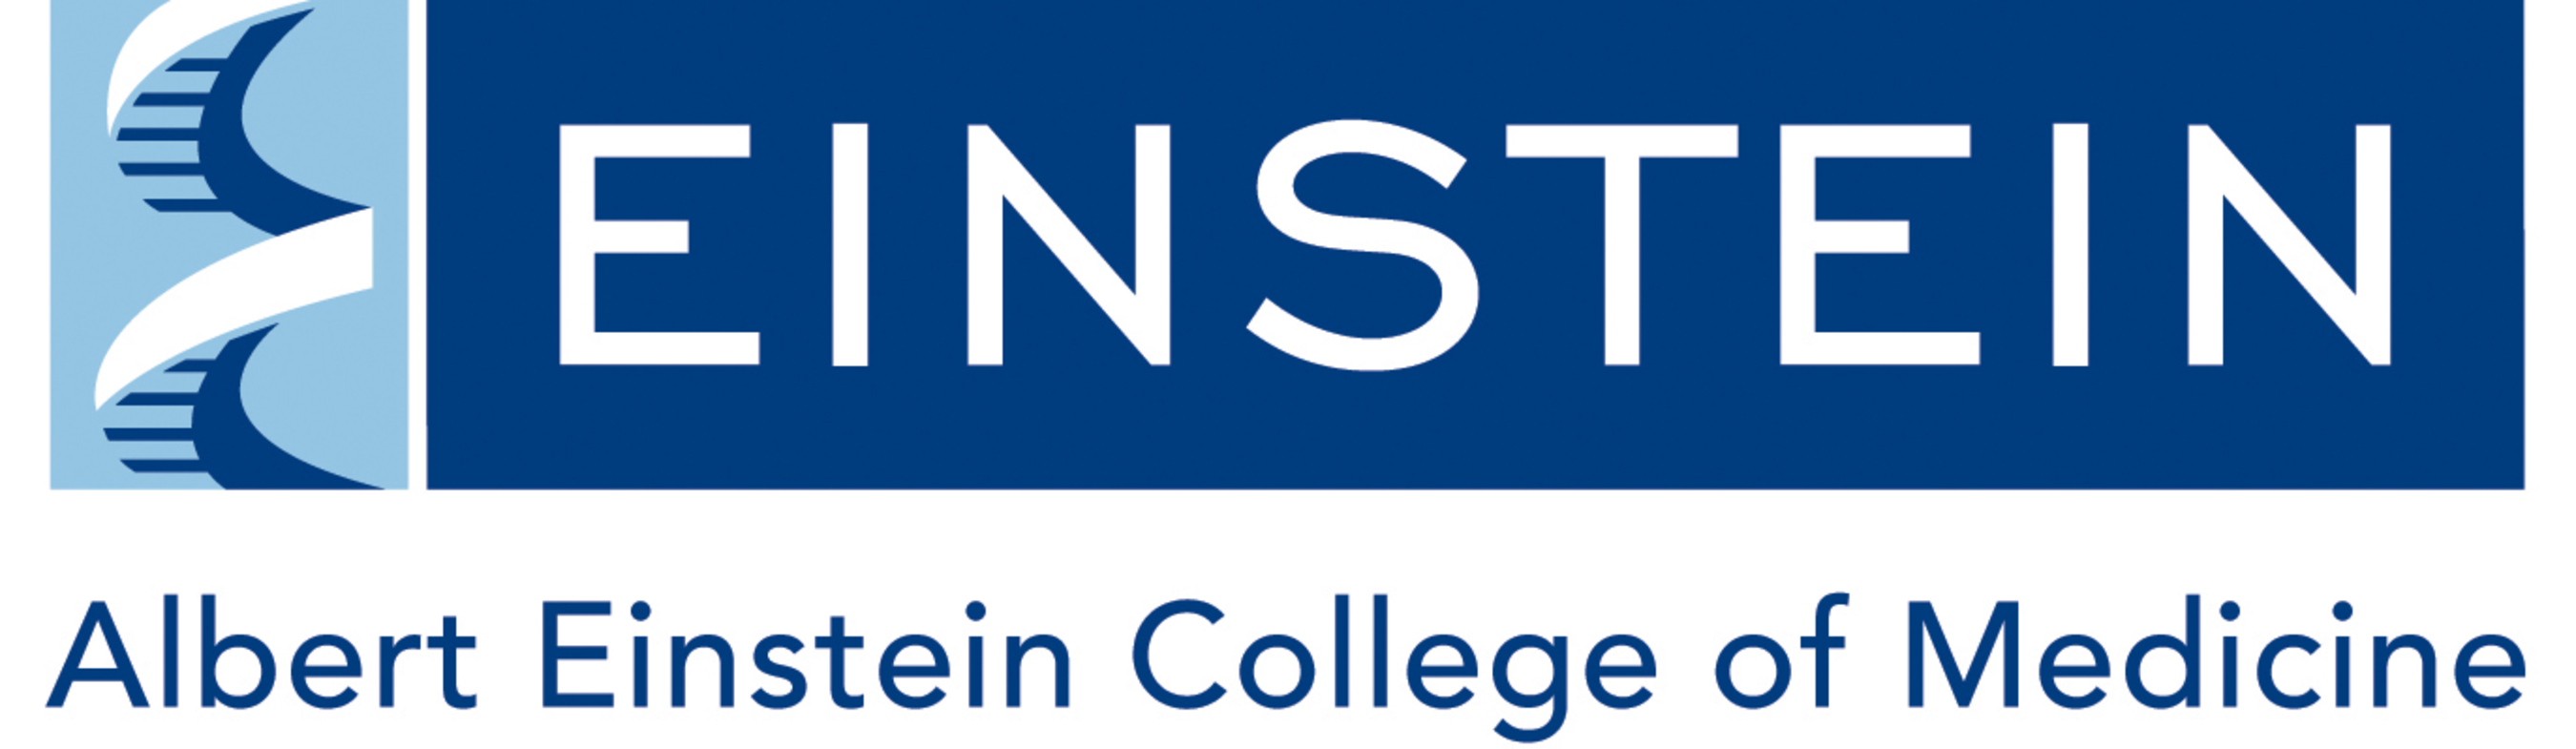 Albert Einstein College of Medicine Logo. (PRNewsFoto/Albert Einstein College of Medicine) (PRNewsFoto/)